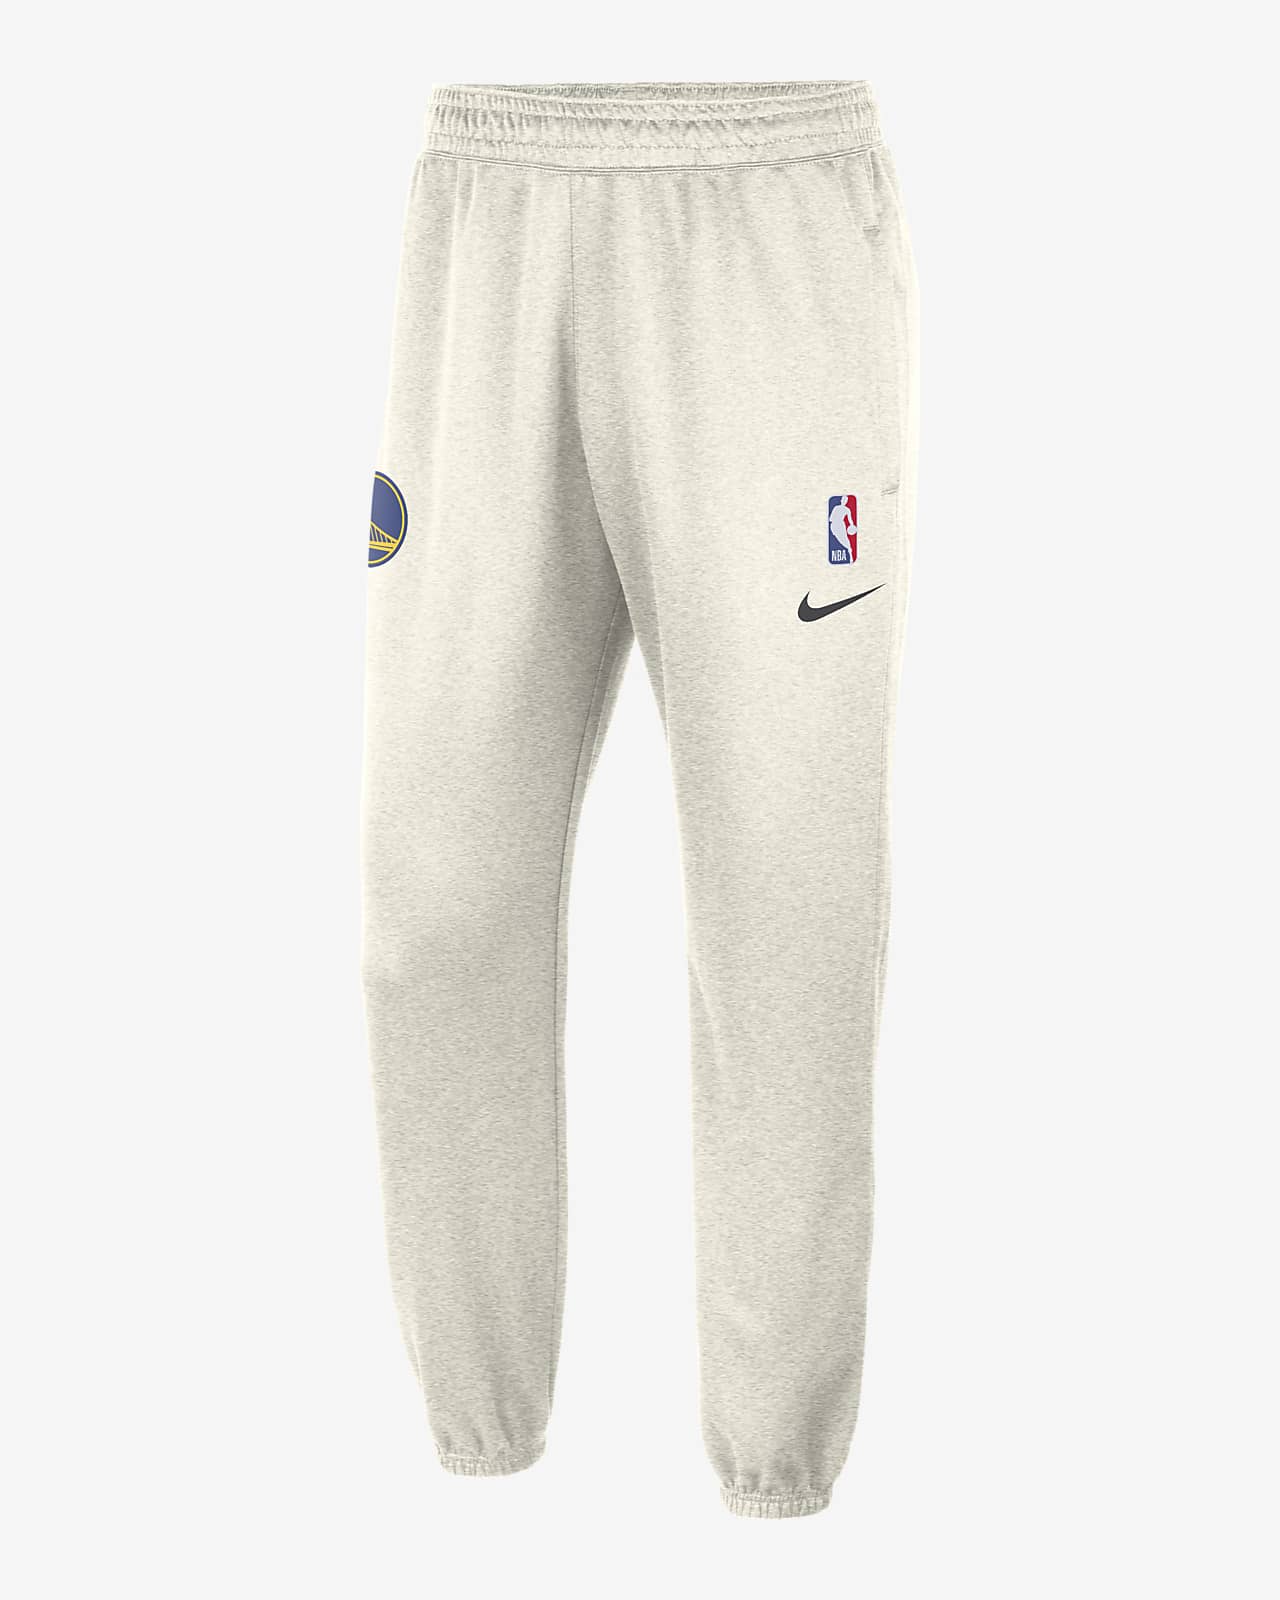 NBA, Pants, Nba Sweatpants Size M